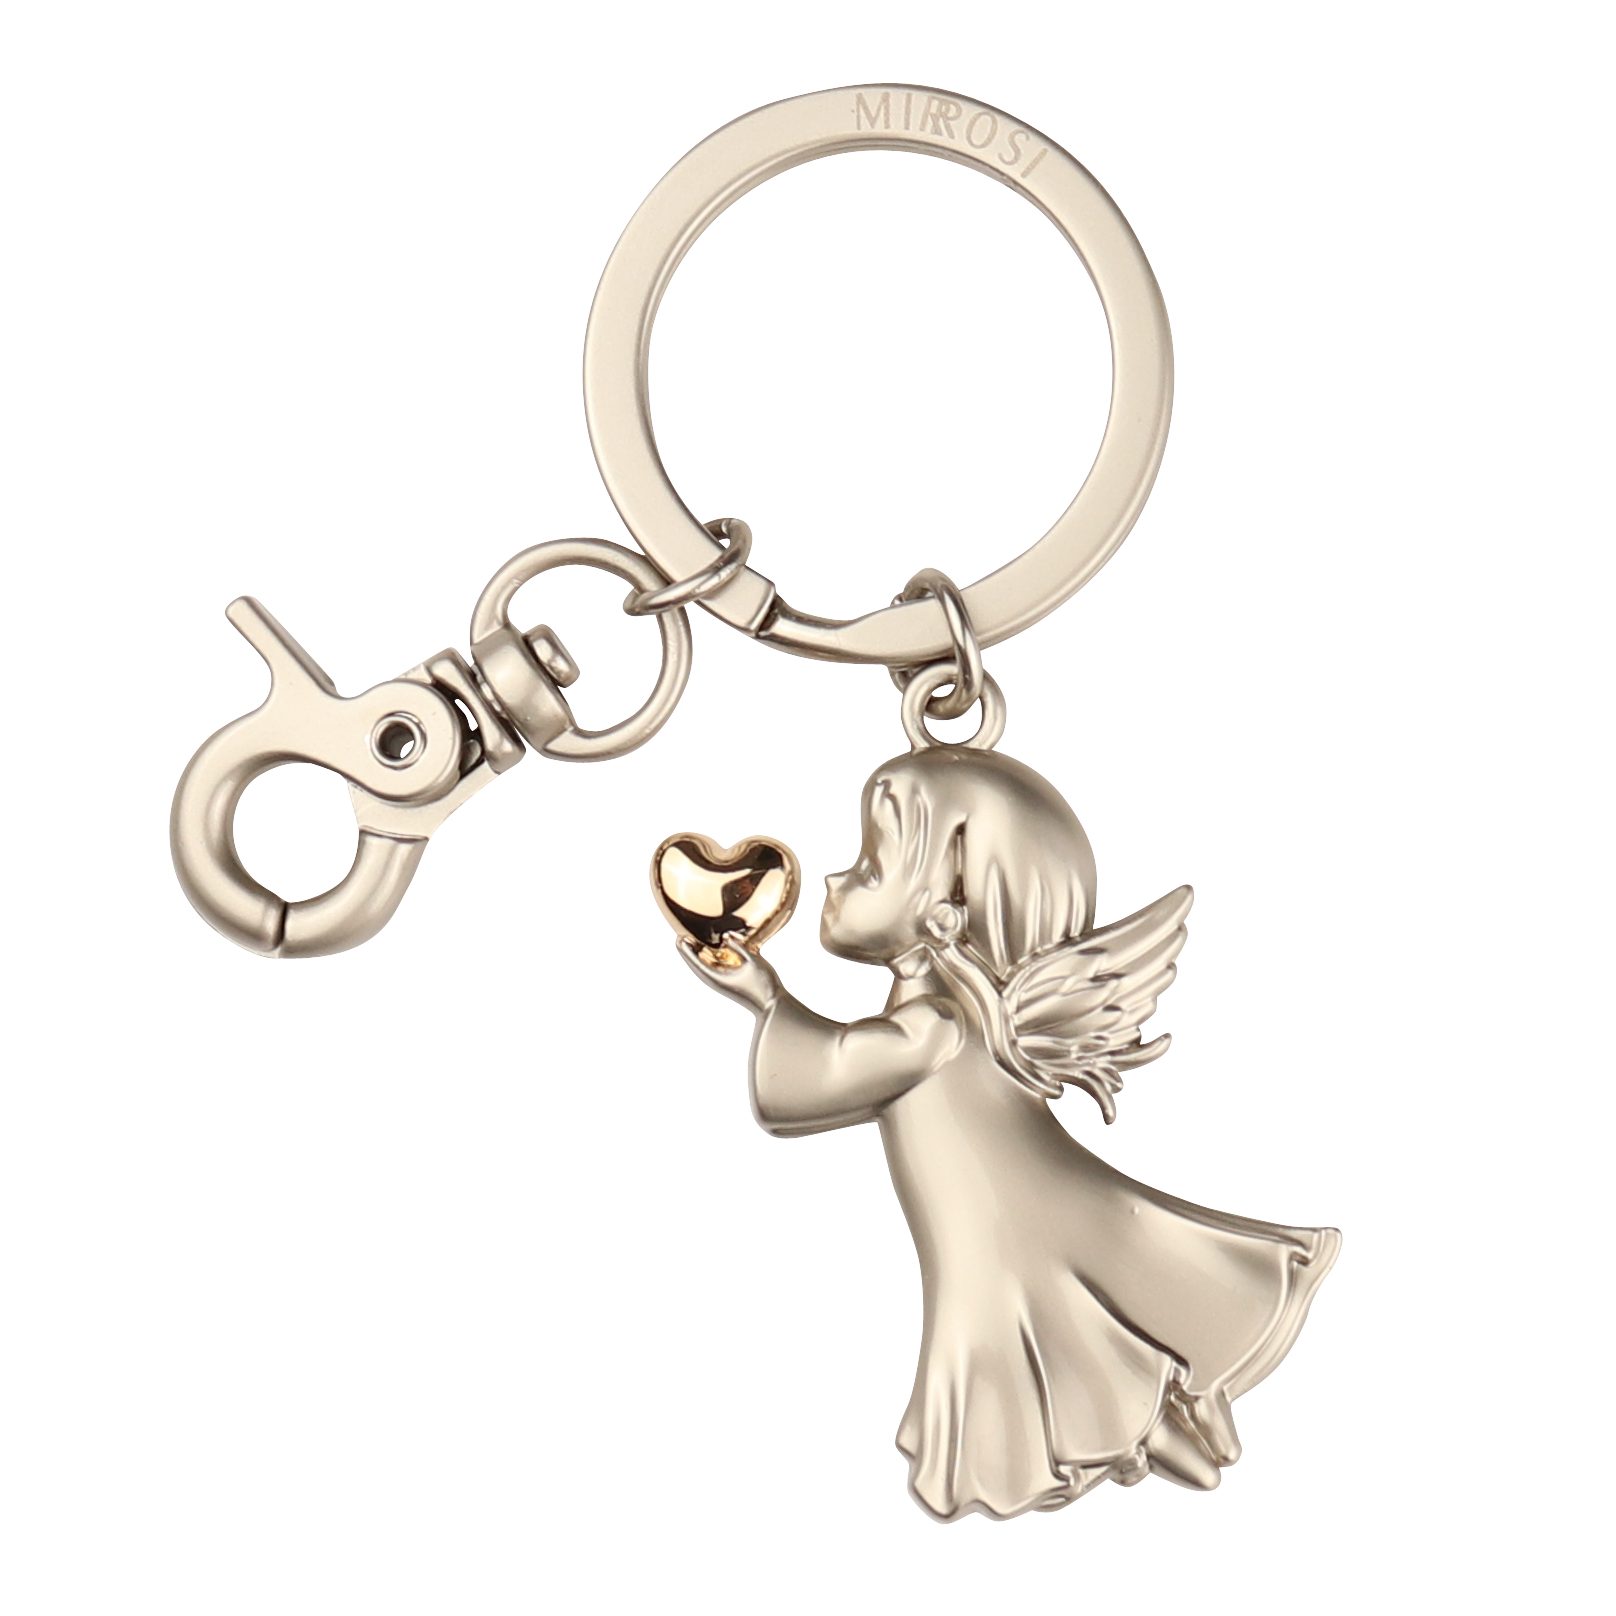 MIRROSI Schlüsselanhänger Schutzengel Engel "Angela"mit Herzchen, Glückbringer, Auto (Geschenk für Freunden,Familie), mit praktischem Karabinerhaken Gold